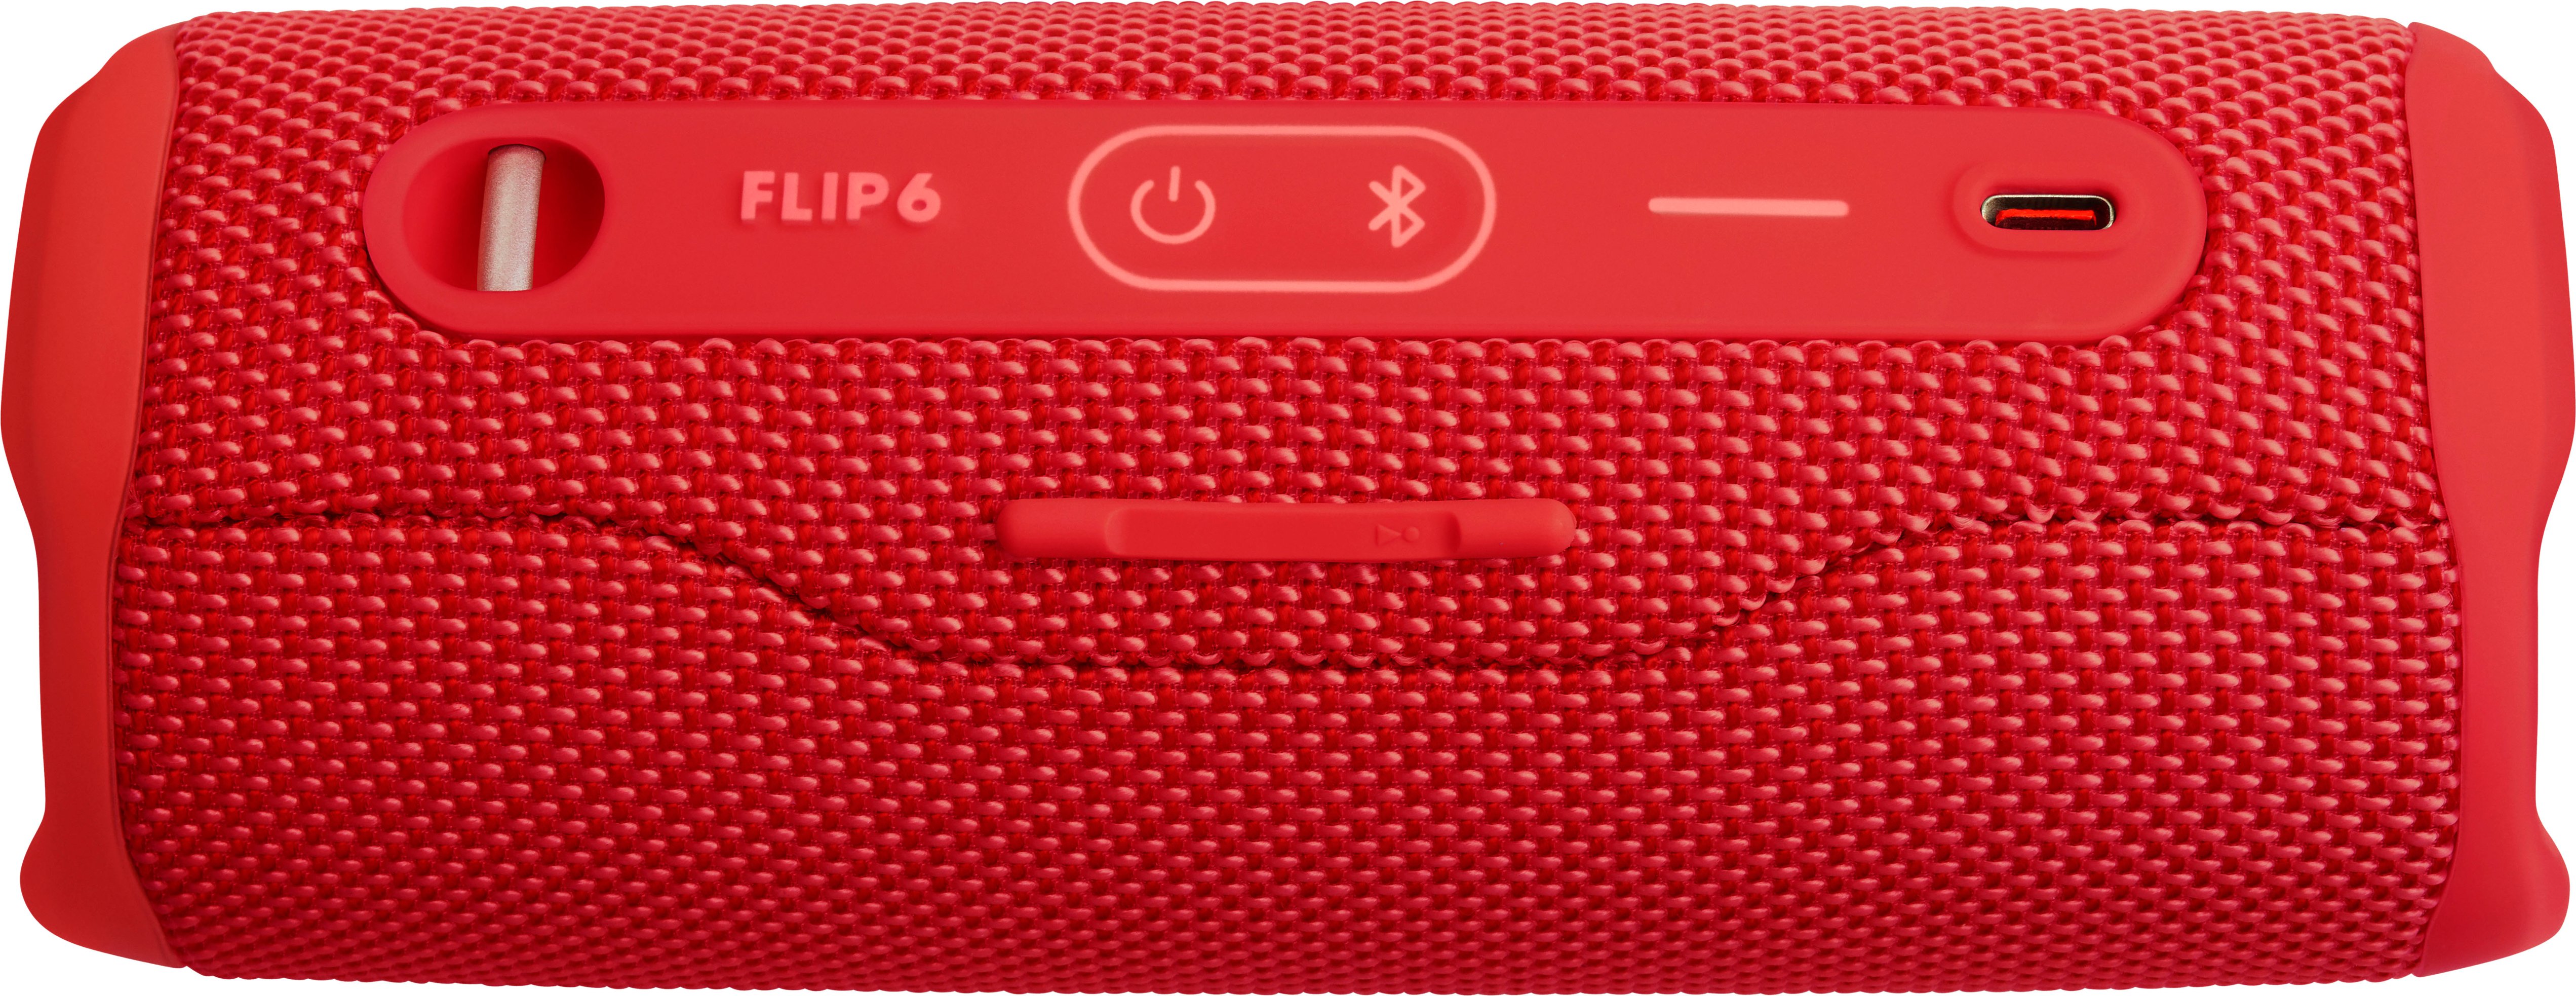 JBL FLIP6 Portable Waterproof Speaker - Best Red JBLFLIP6REDAM Buy